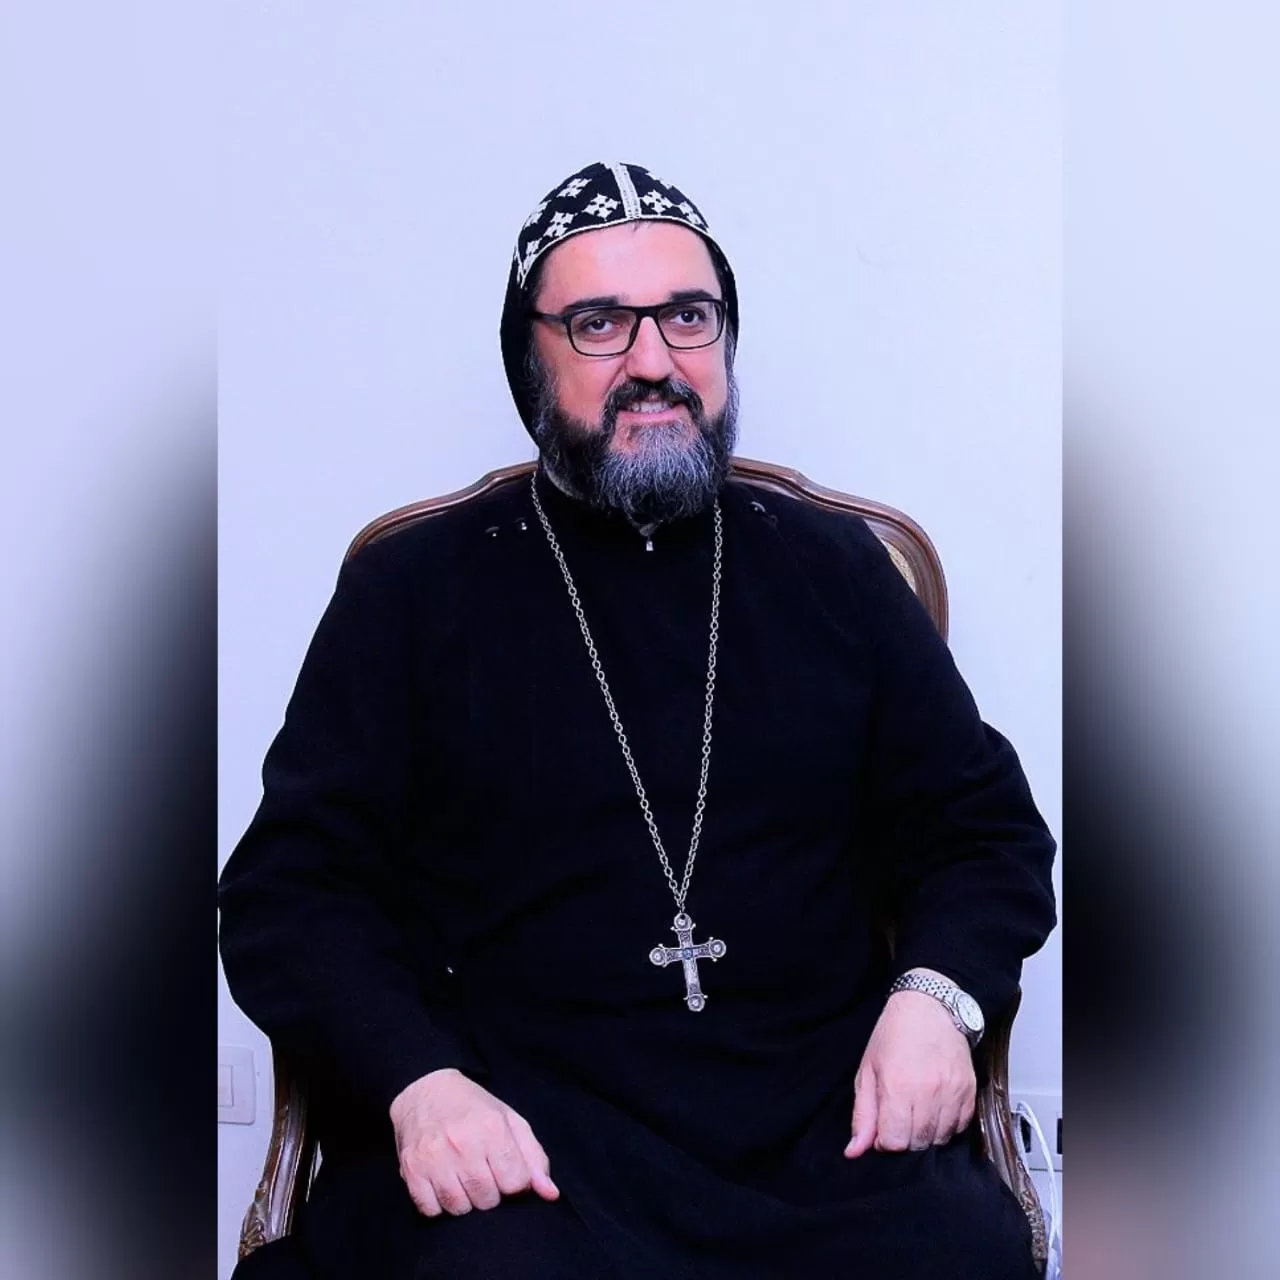 ربان الكنيسة السريانية الأرثوذكسية في مصر يعلن "نعم نحو المشاركة الإيجابية"